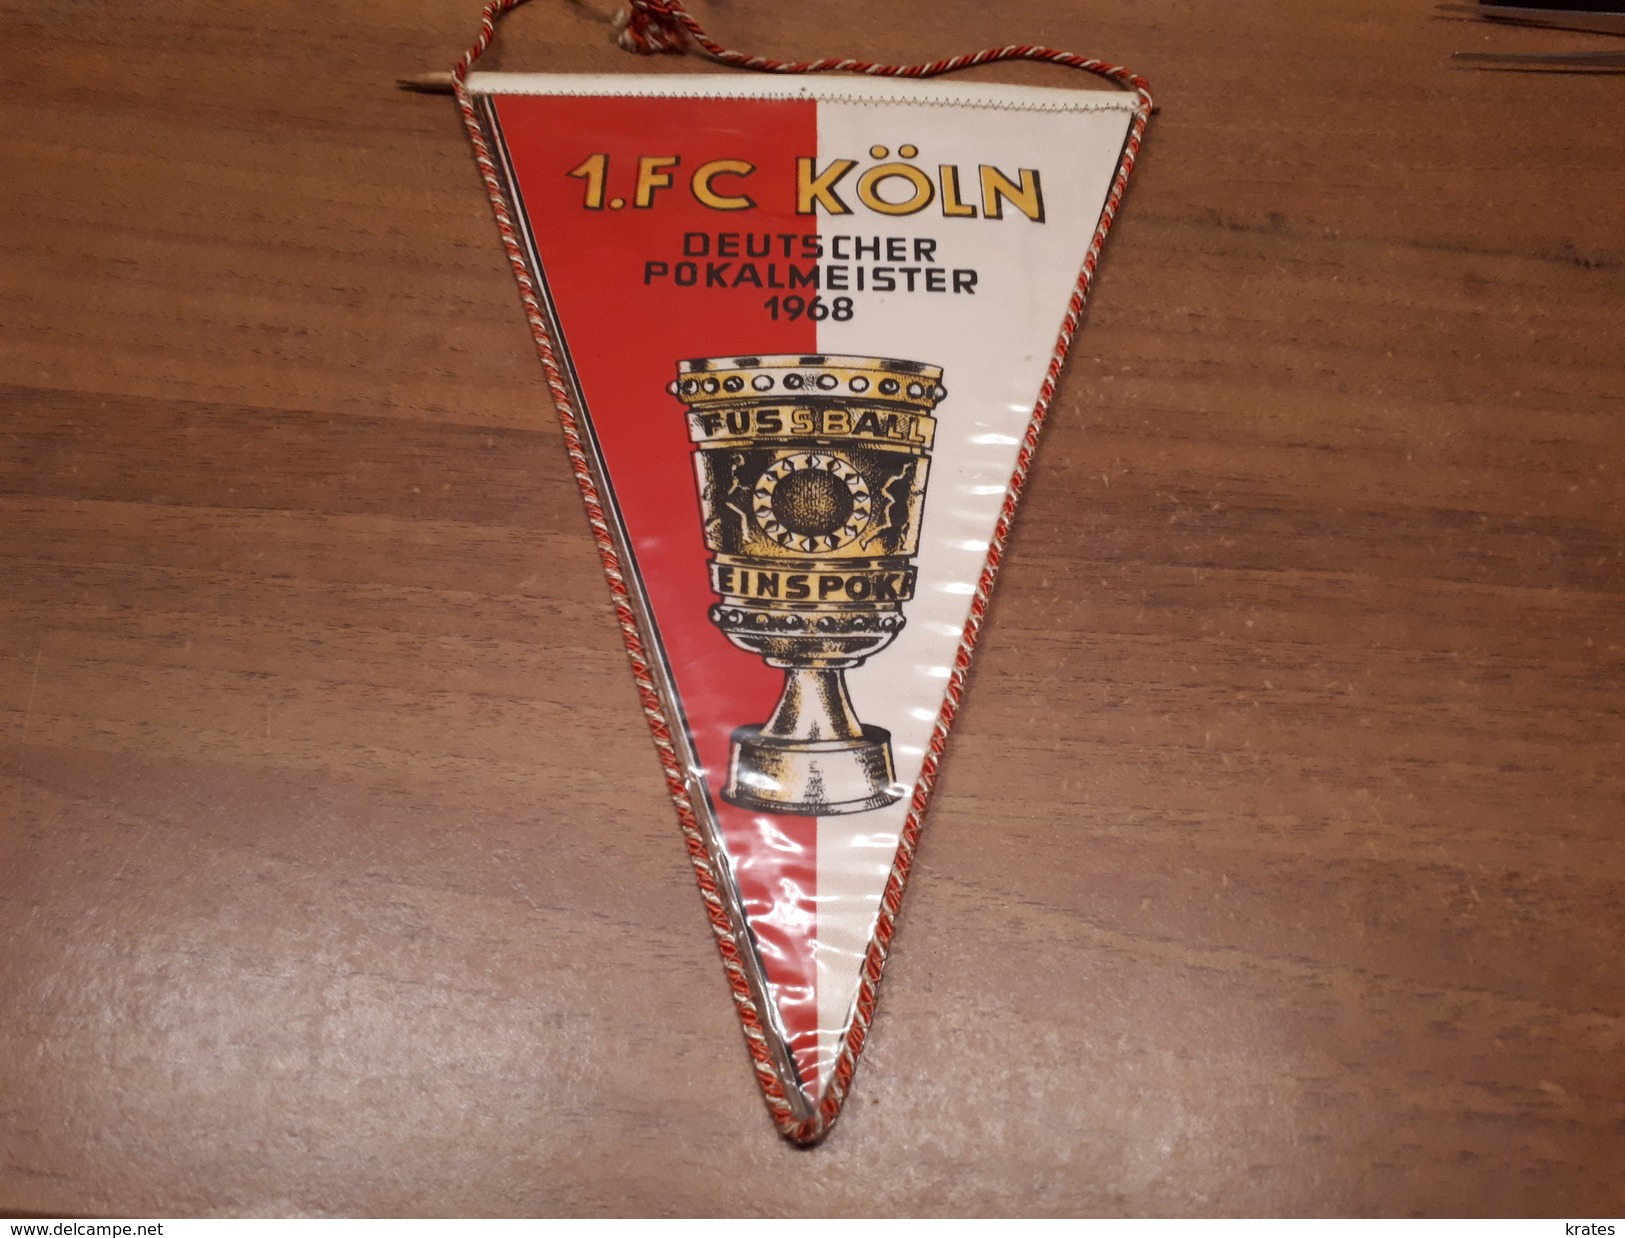 Old Sport Flags - FC Koln, 26 Cm - Habillement, Souvenirs & Autres